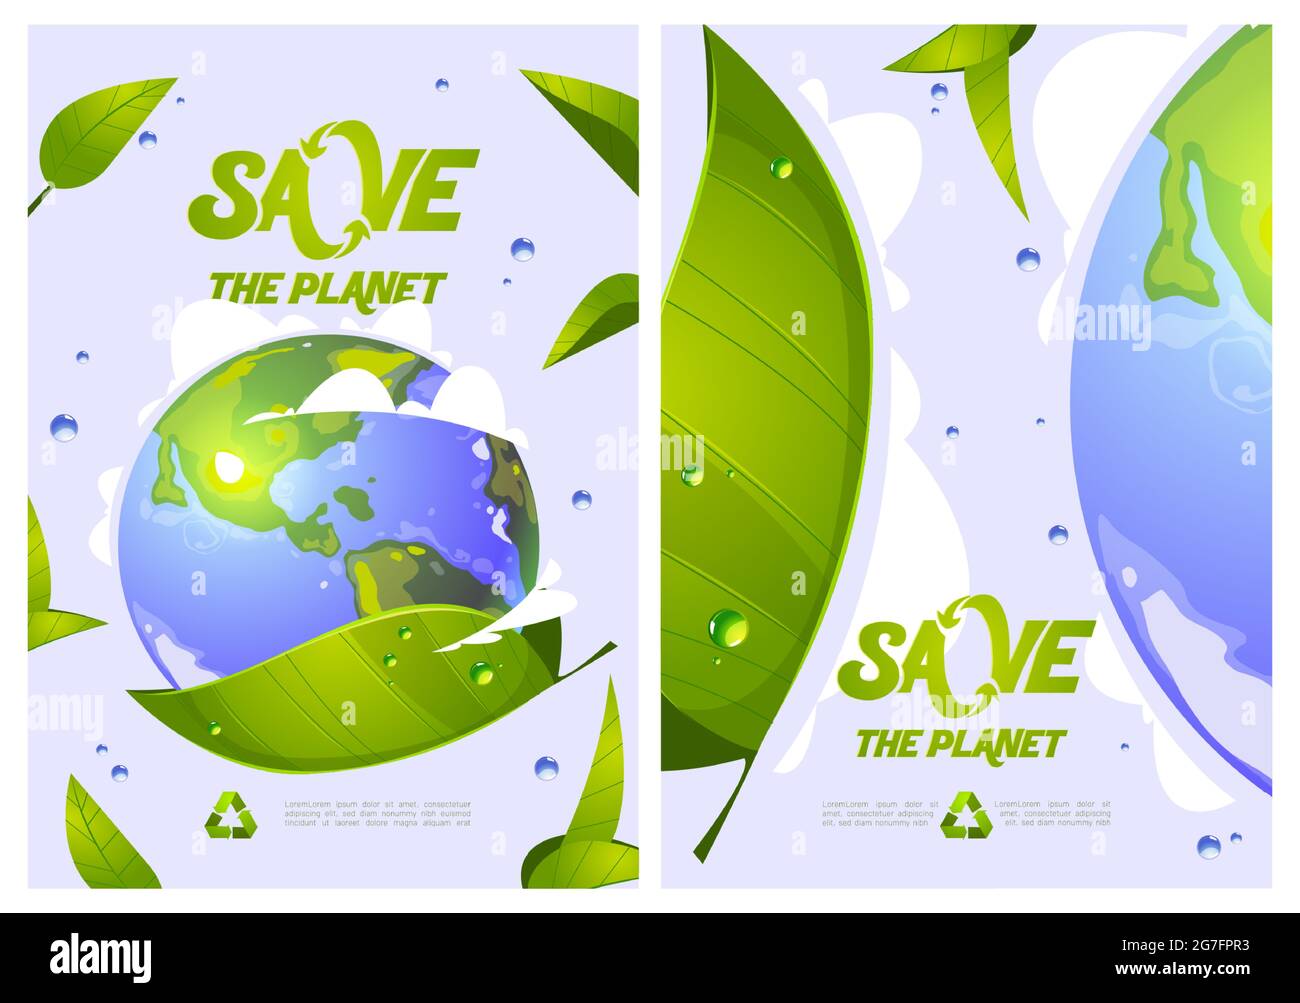 Speichern Sie den Planeten Cartoon Poster mit Erdkugel, grünen Blättern, Wassertropfen und Recycling-Symbol. Umweltschutz, erneuerbare Energien und nachhaltige Entwicklung eco Conservation Vector Concept Stock Vektor